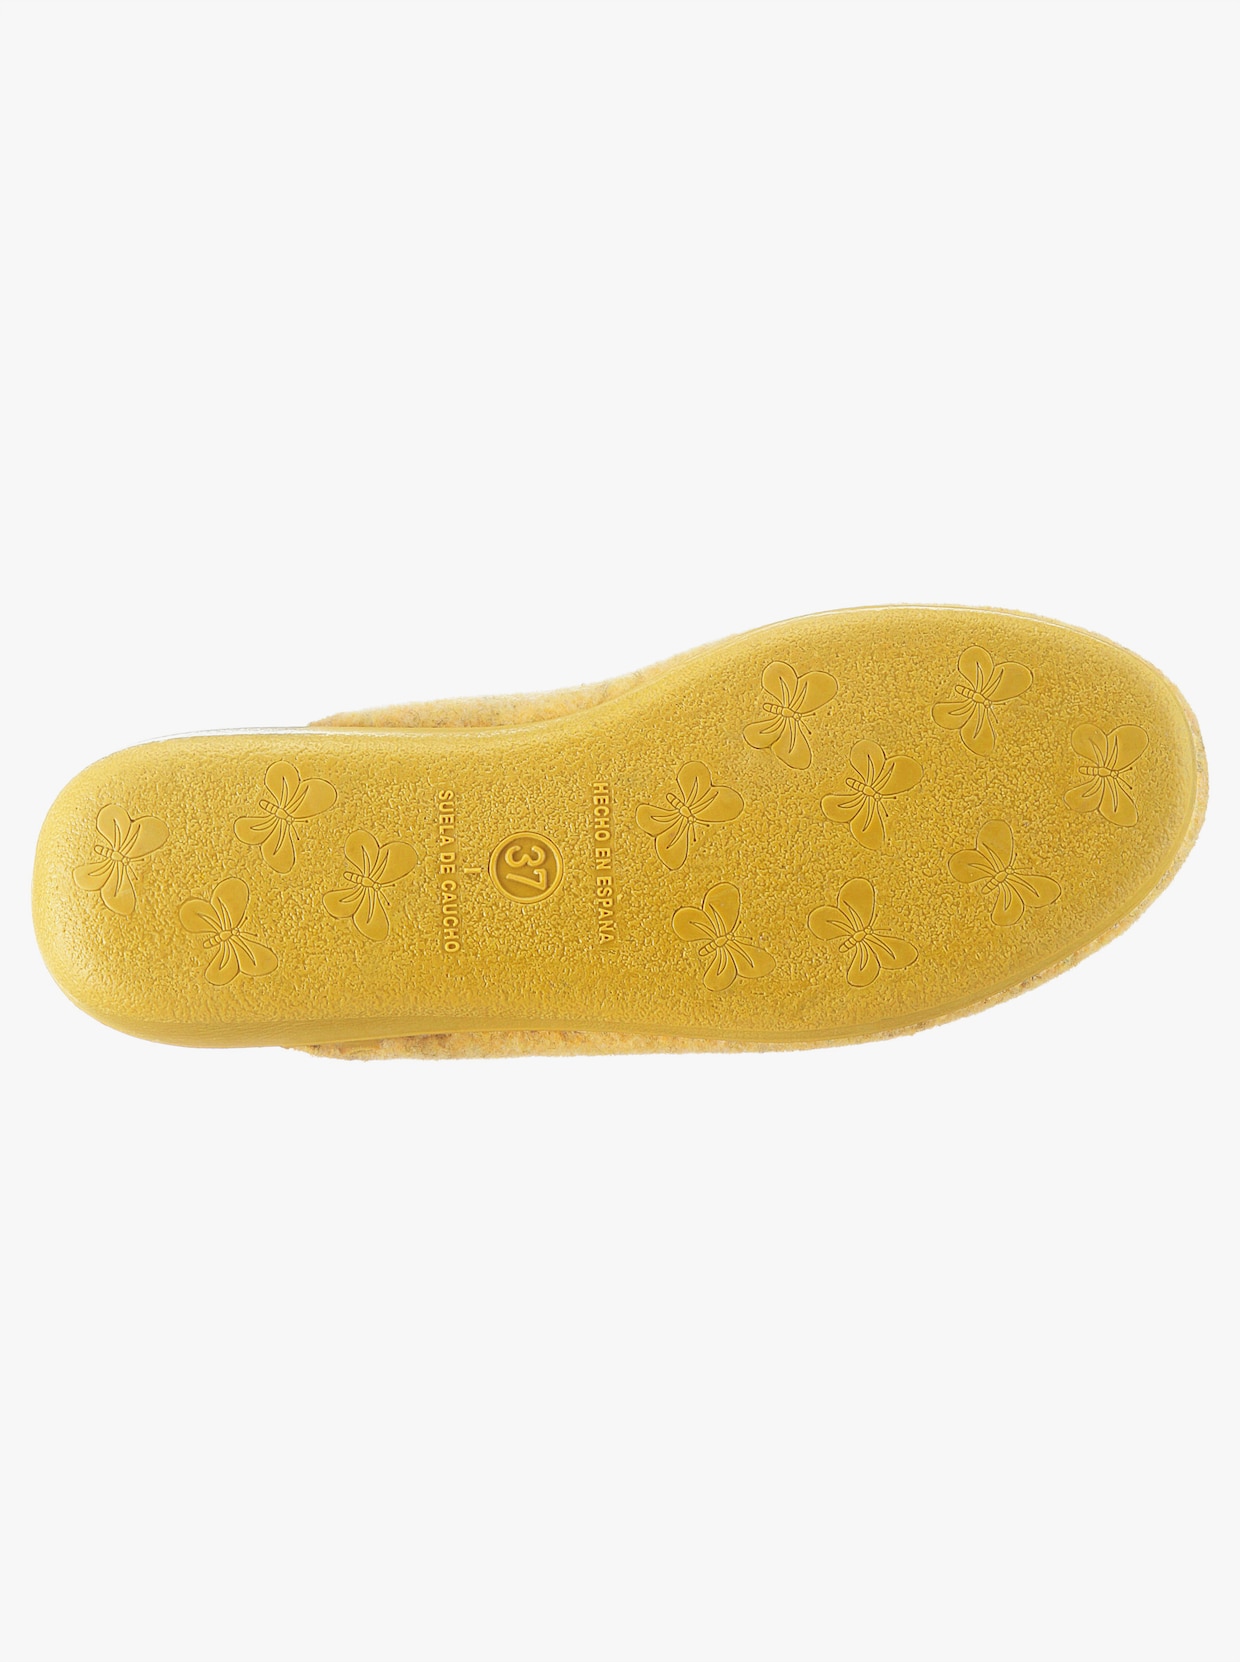 Pantoffels - geel